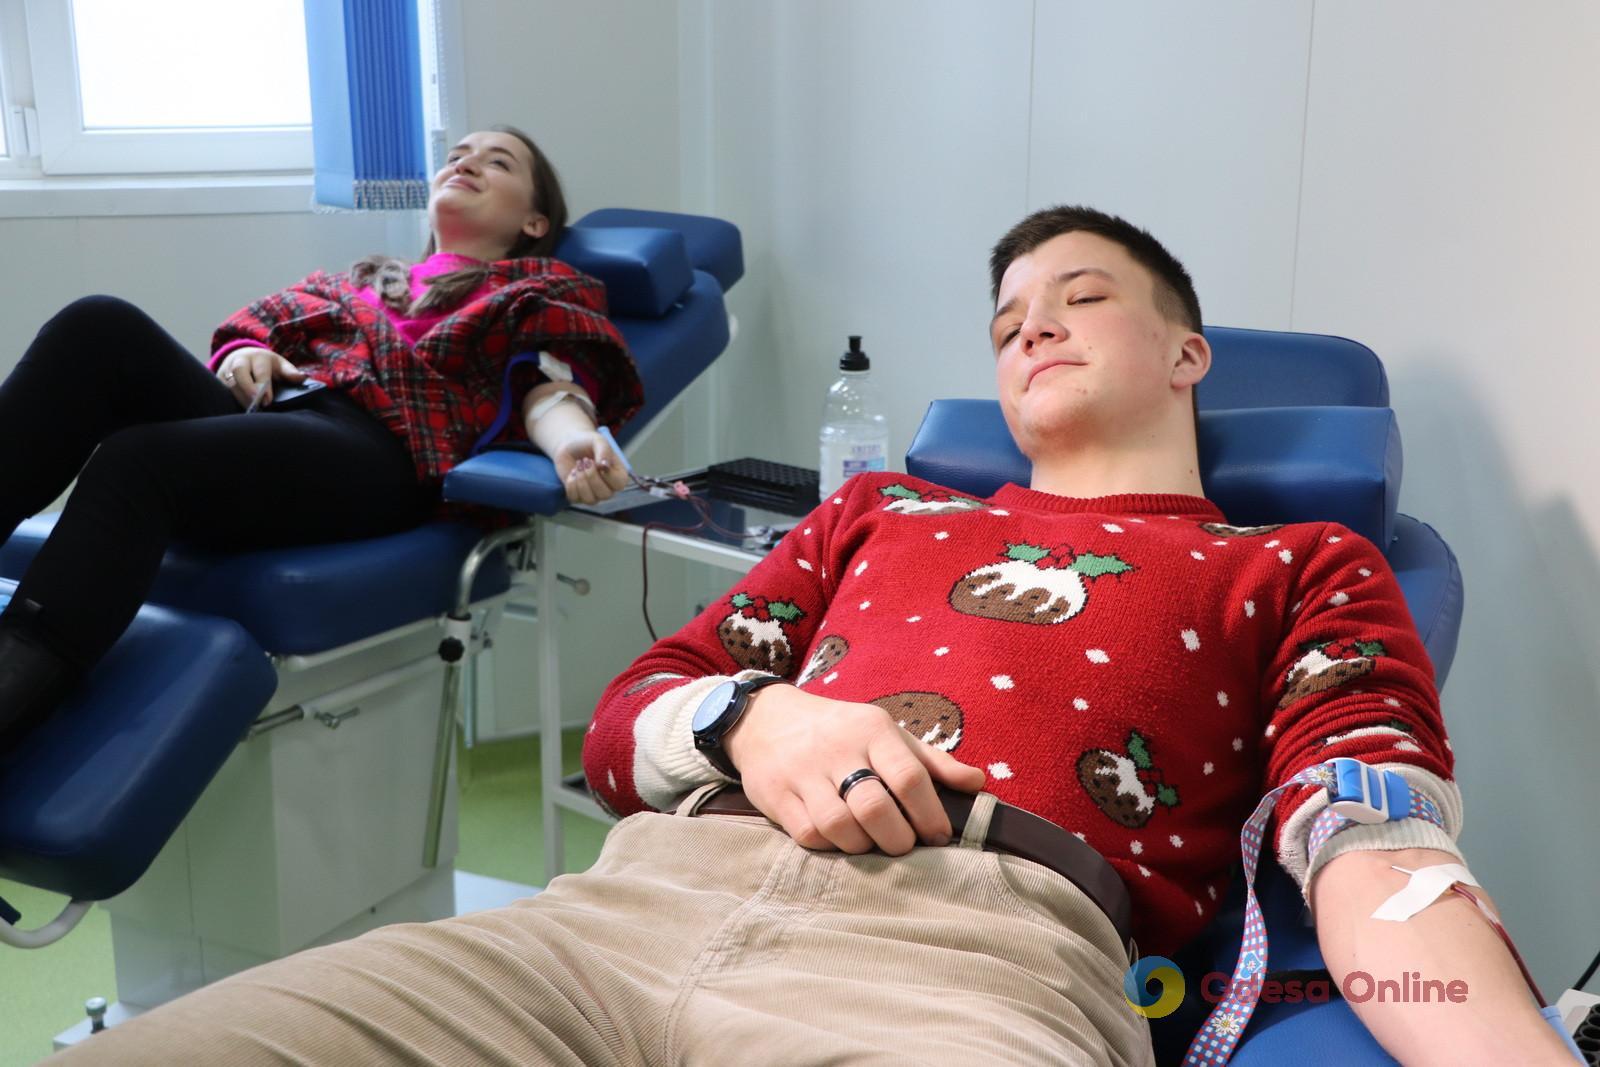 К Рождеству в Одессе провели праздничную акцию по сдаче донорской крови (фото)